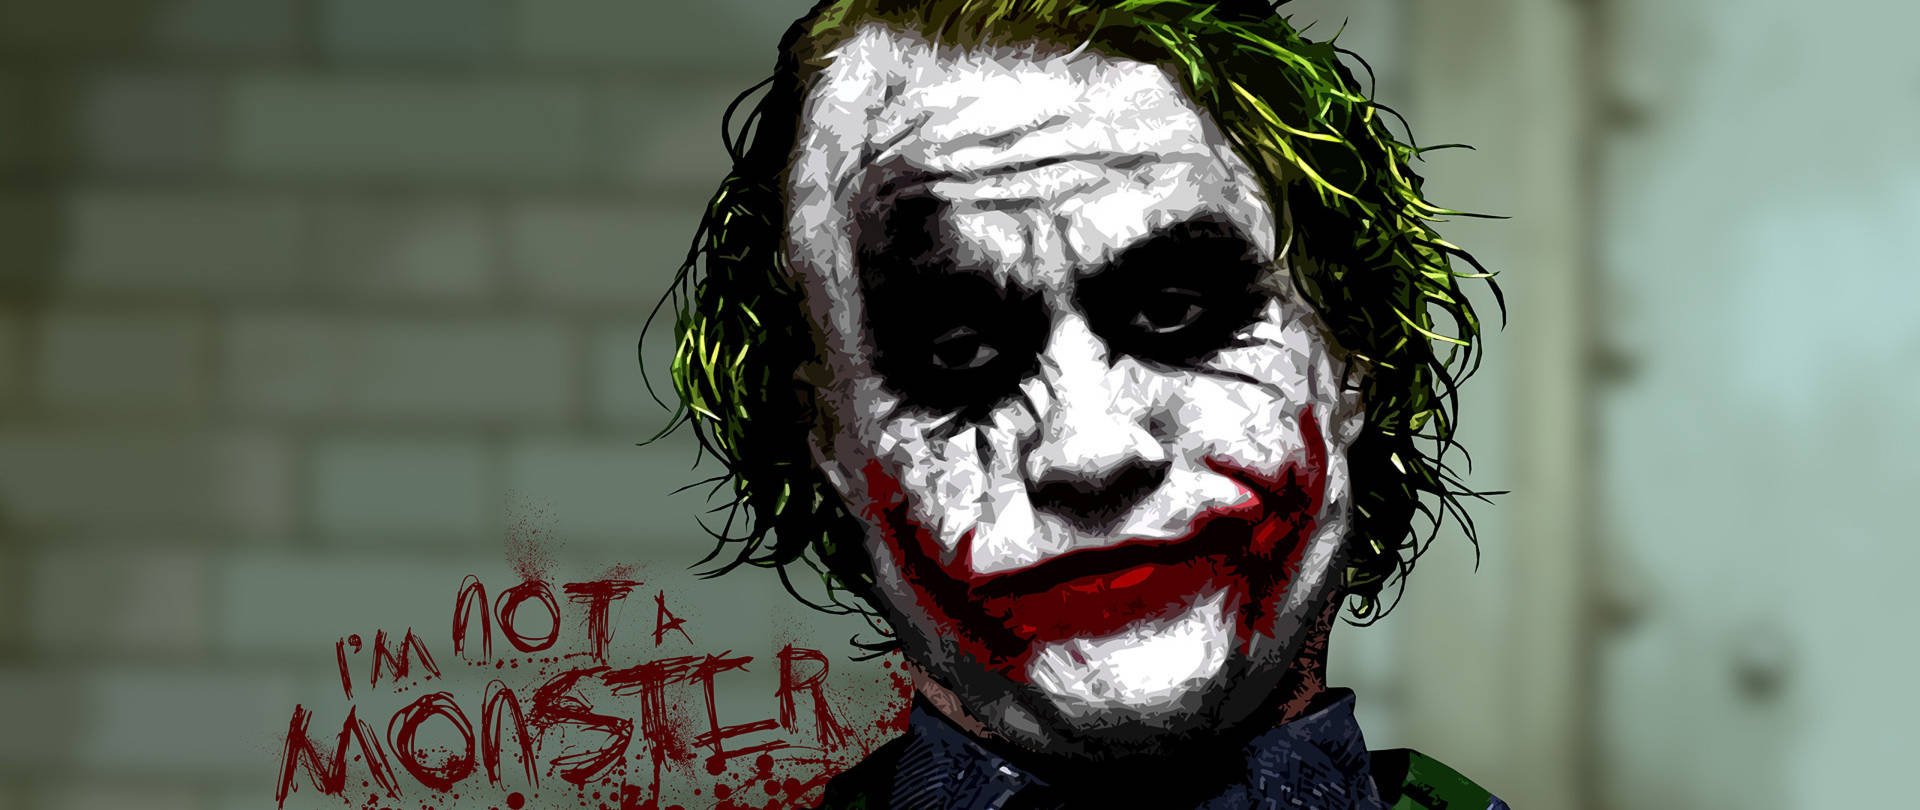 Joker I'm Not A Monster 4k Ultra Hd Wallpaper